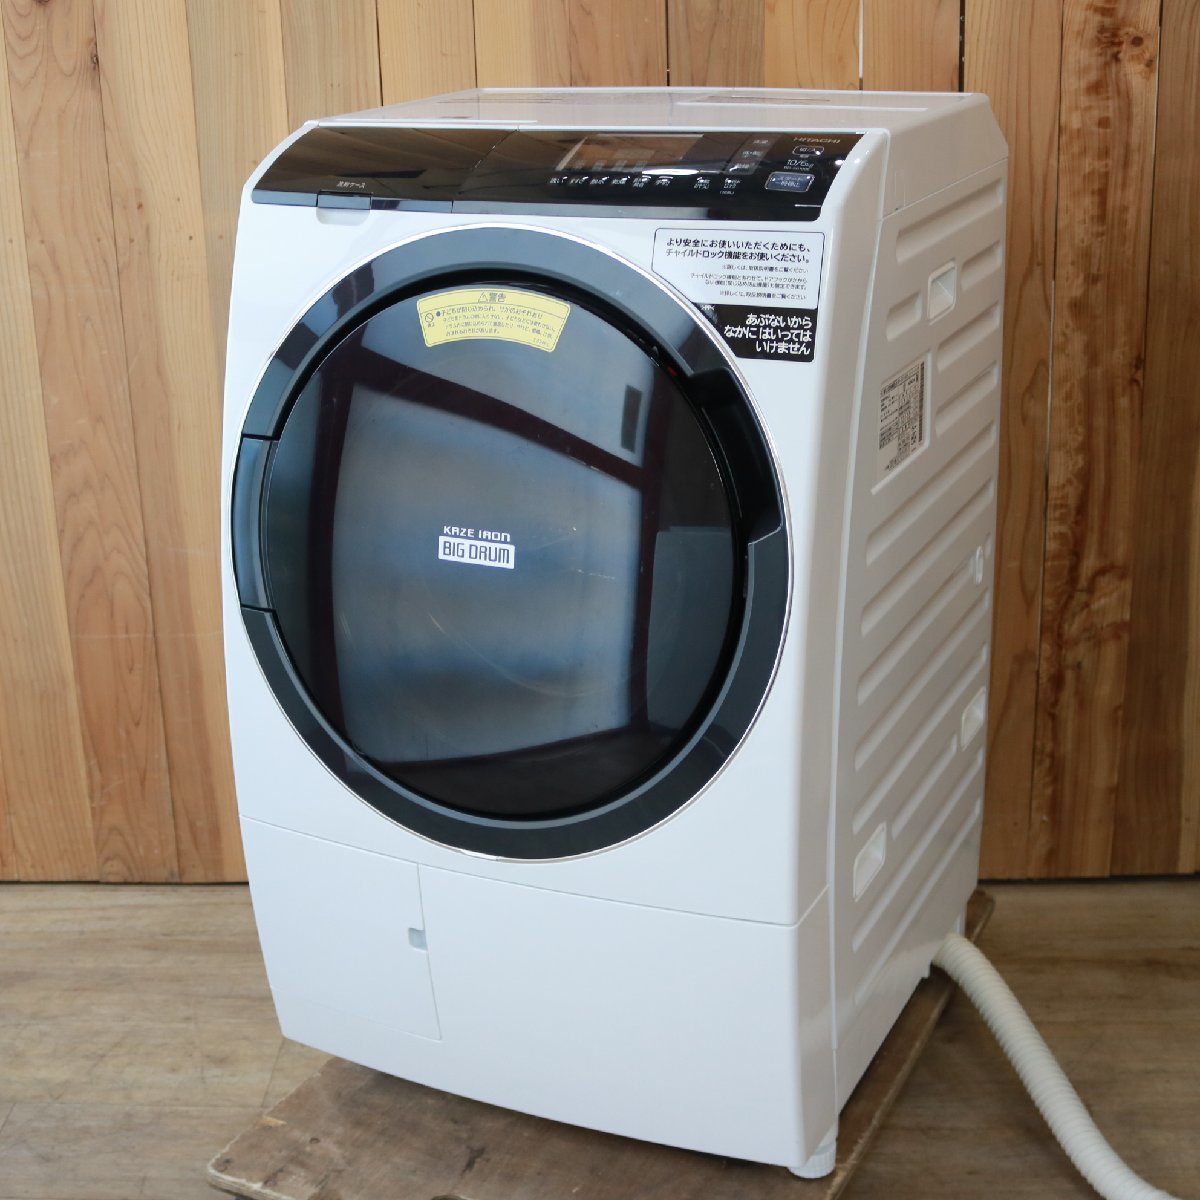 東京都武蔵野市にて 日立 ドラム式洗濯乾燥機 BD-SG100EL 2020年製 を